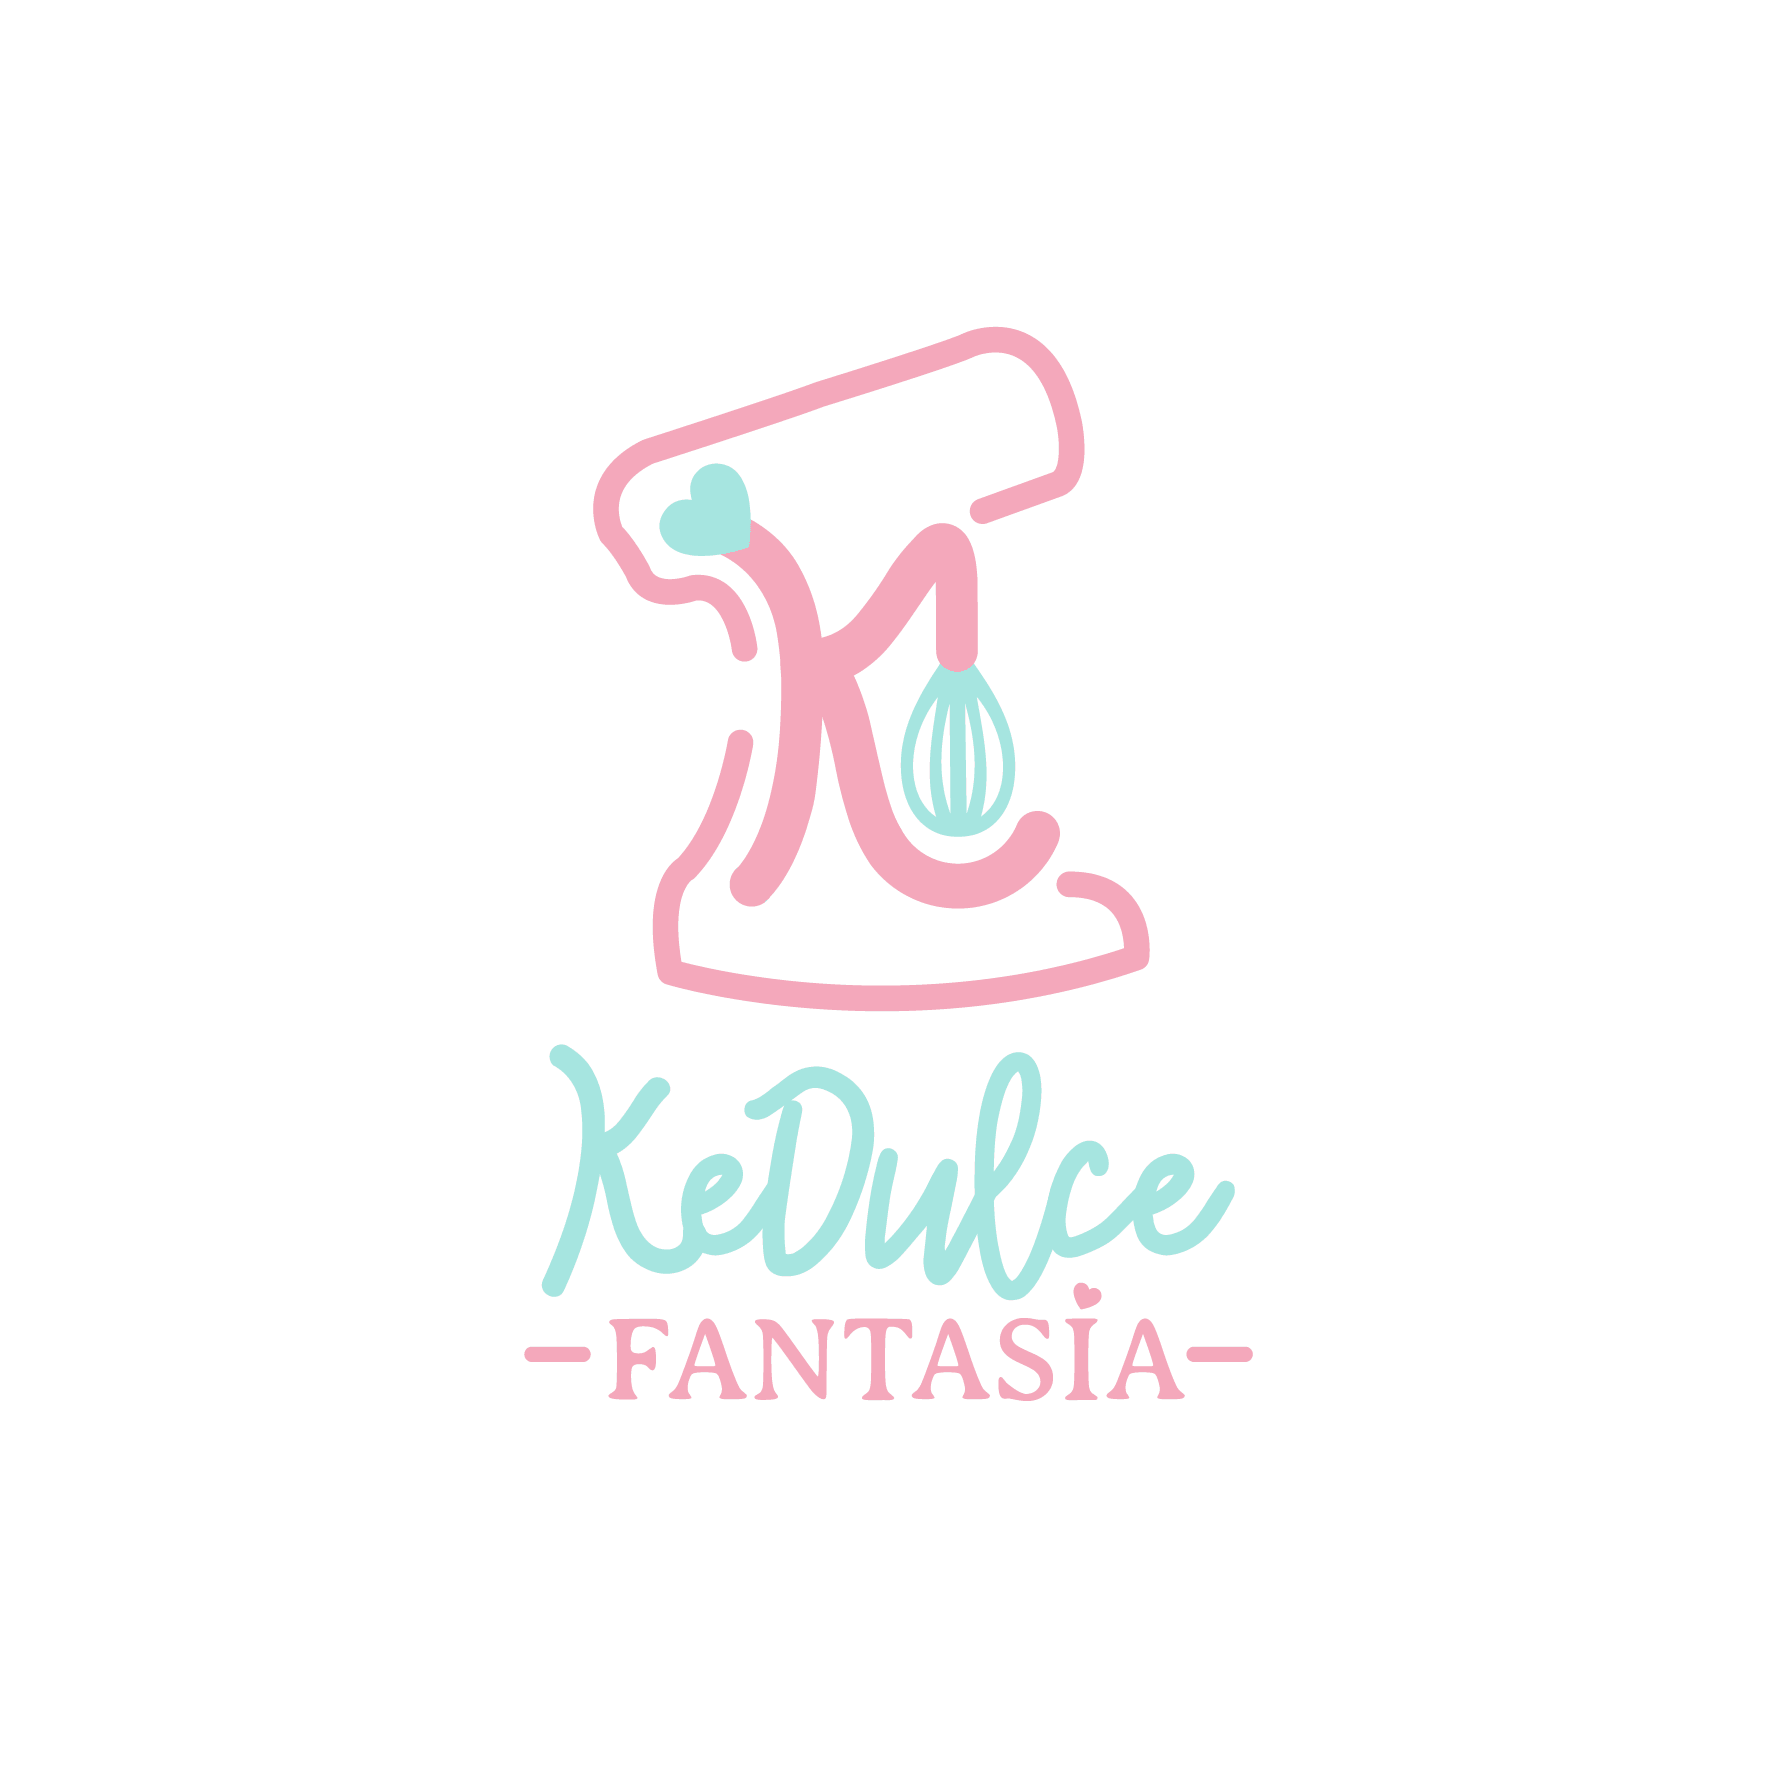 KEDULCE FANTASIA logo - vsec-02